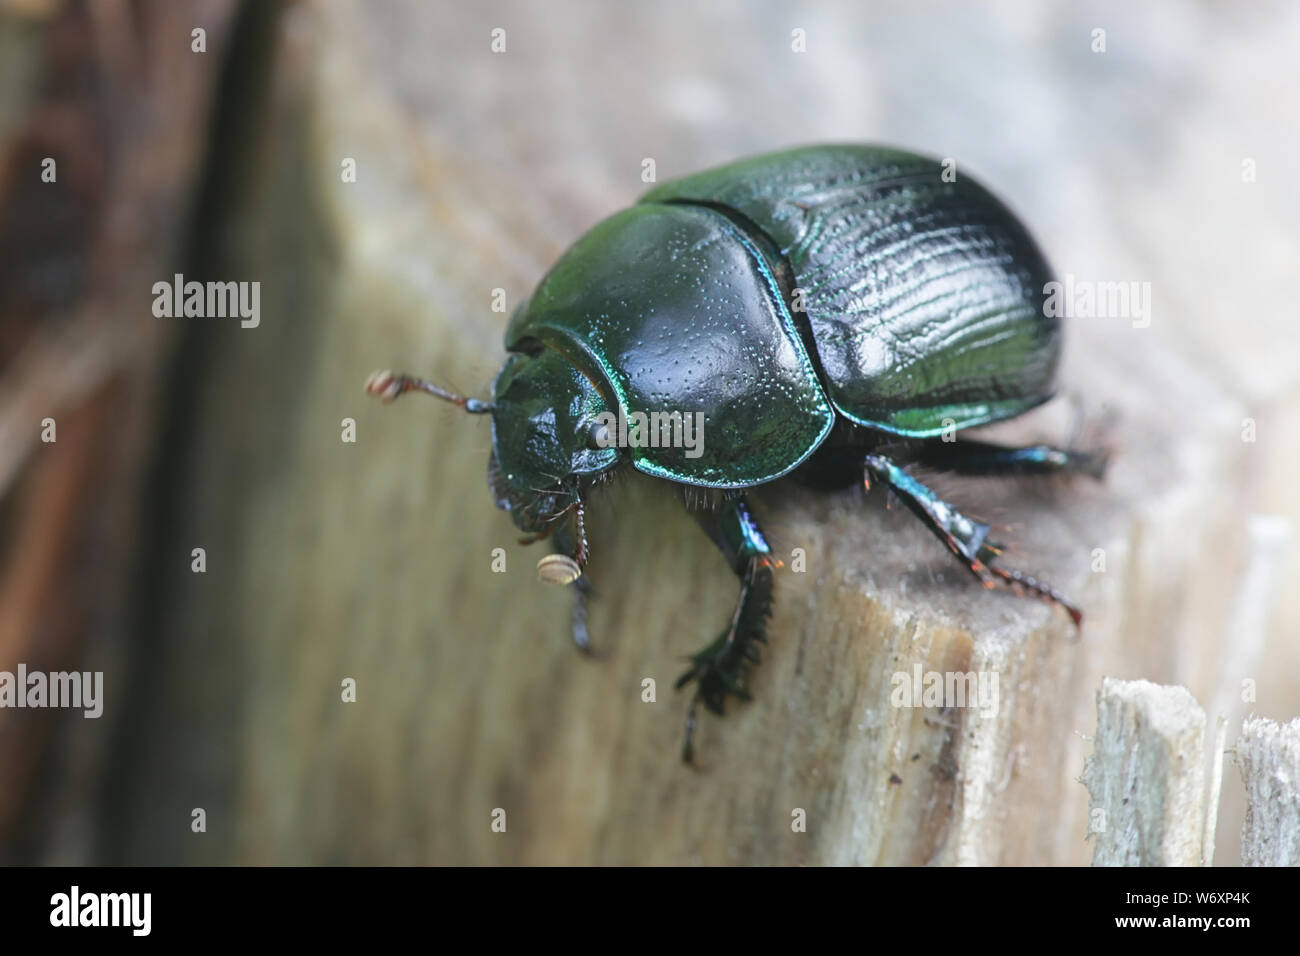 Anoplotrupes stercorosus, conocido como dor escarabajo, una especie de tierra-aburrido de los escarabajos Foto de stock